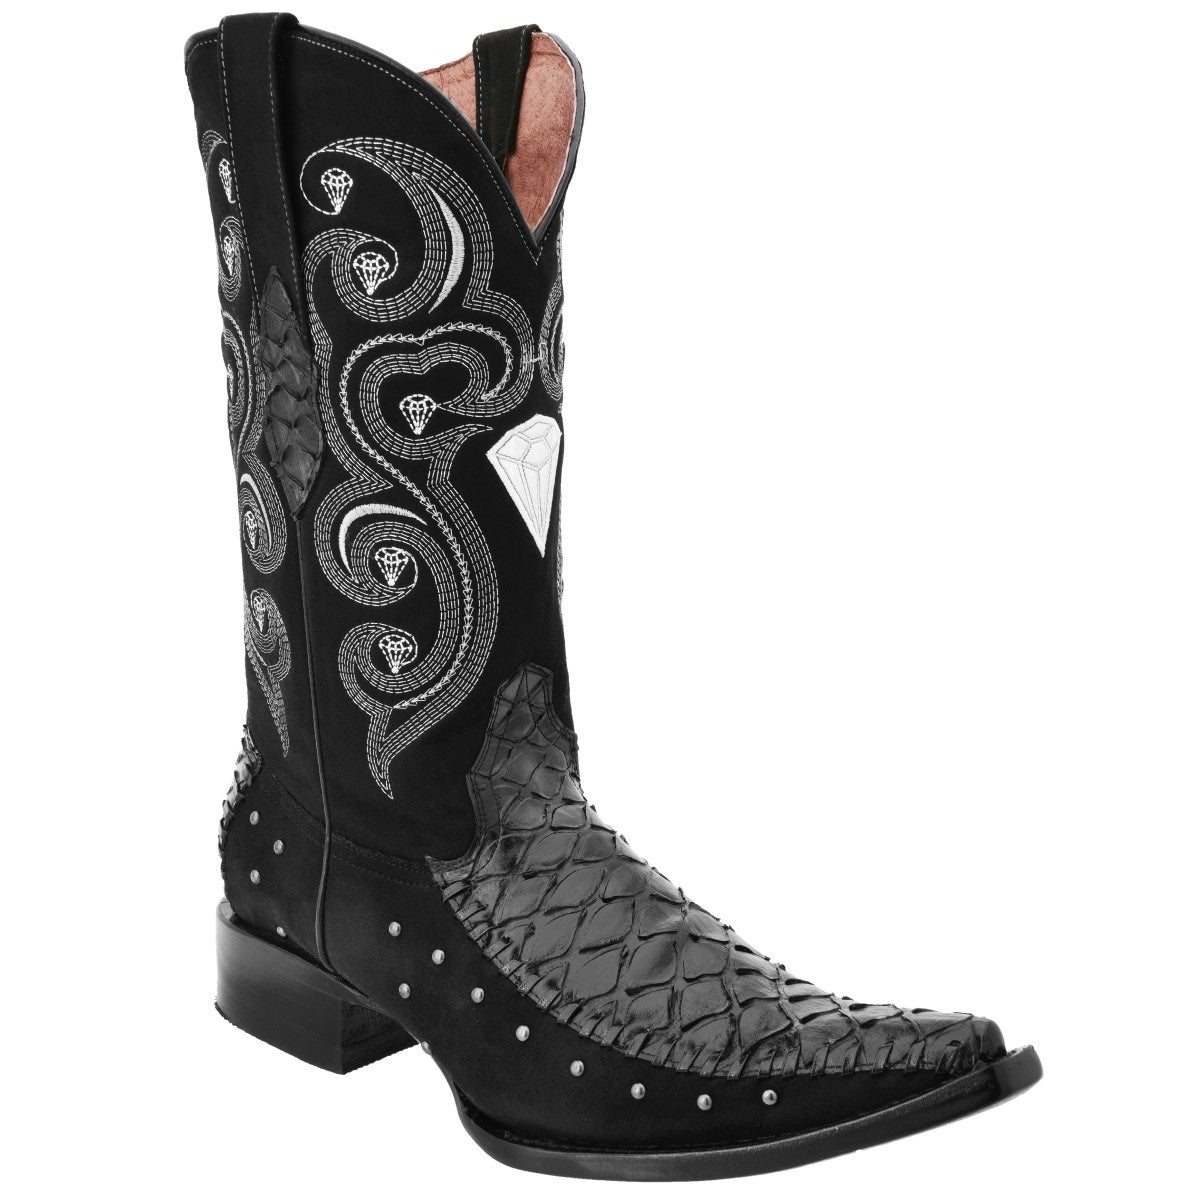 Botas Vaqueras TM-WD0138 - Western Boots